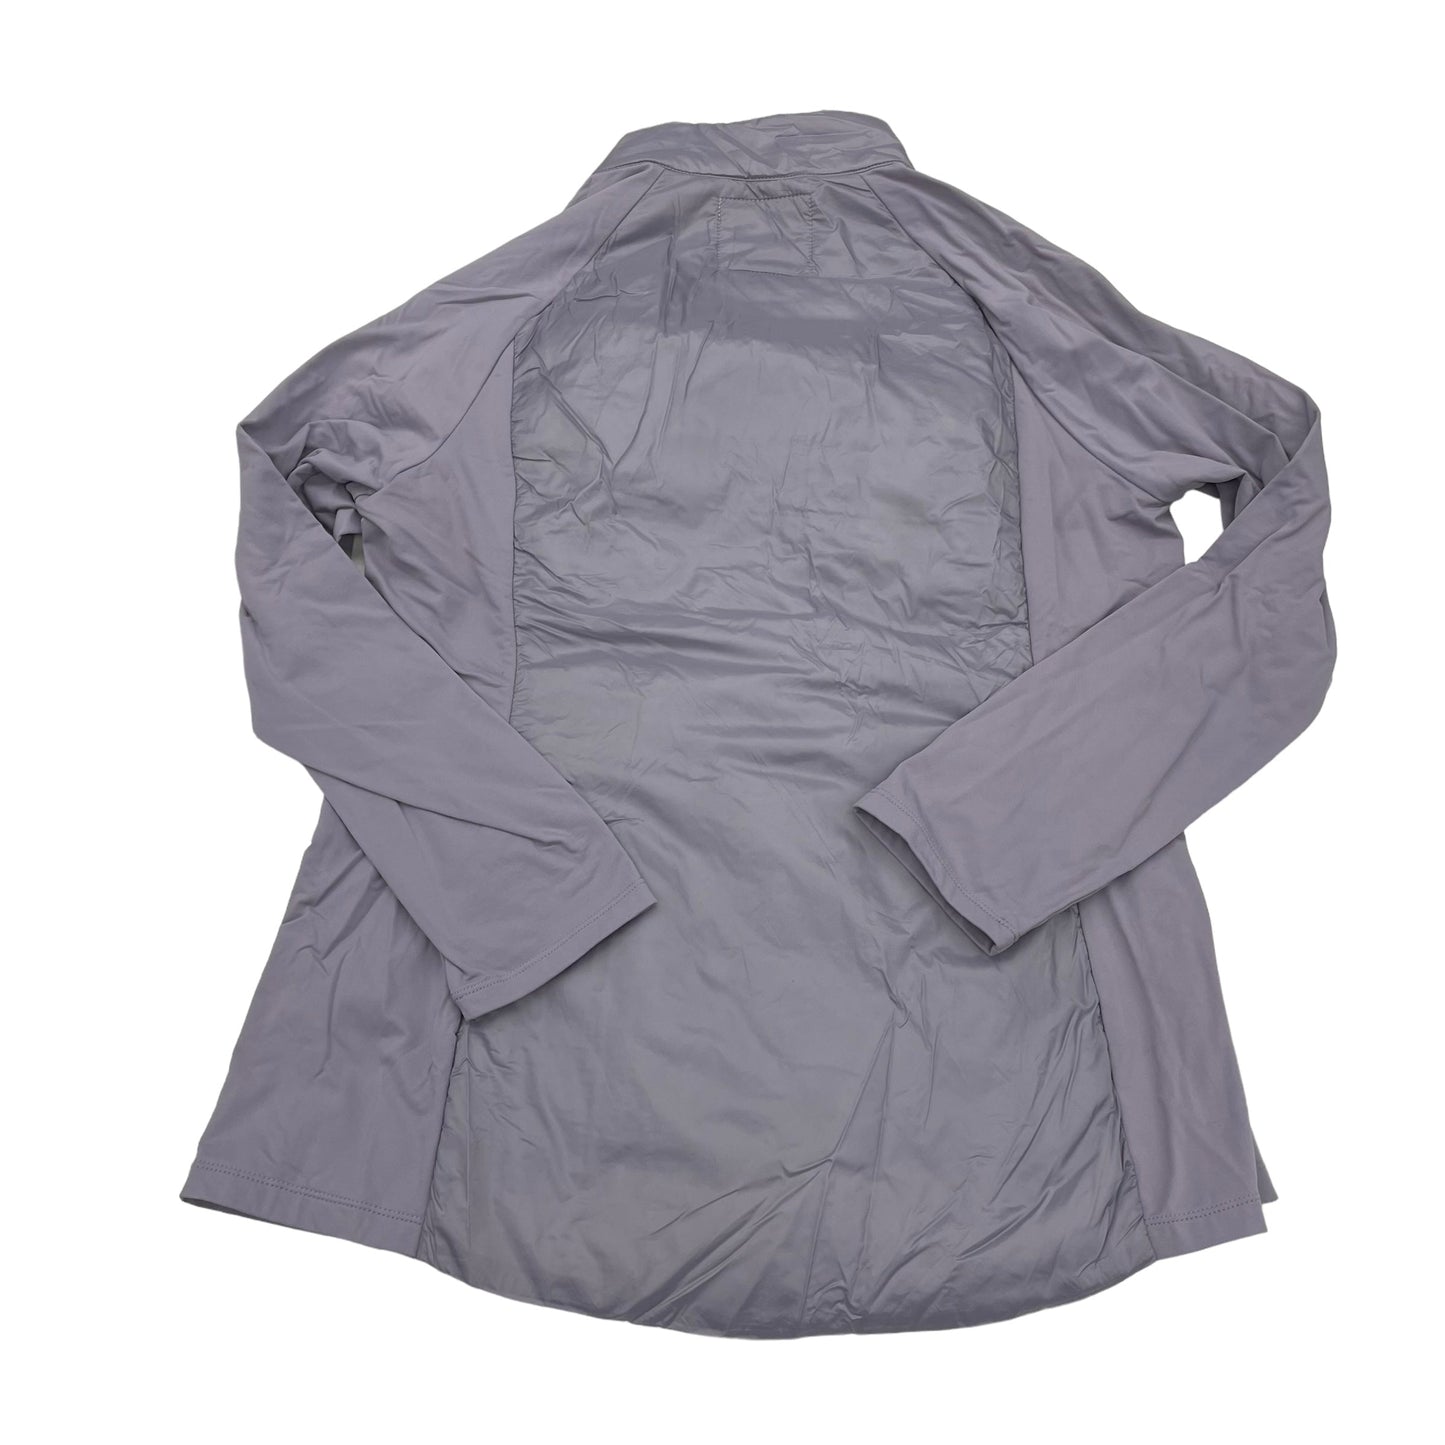 Jacket Windbreaker By Kyodan  Size: L